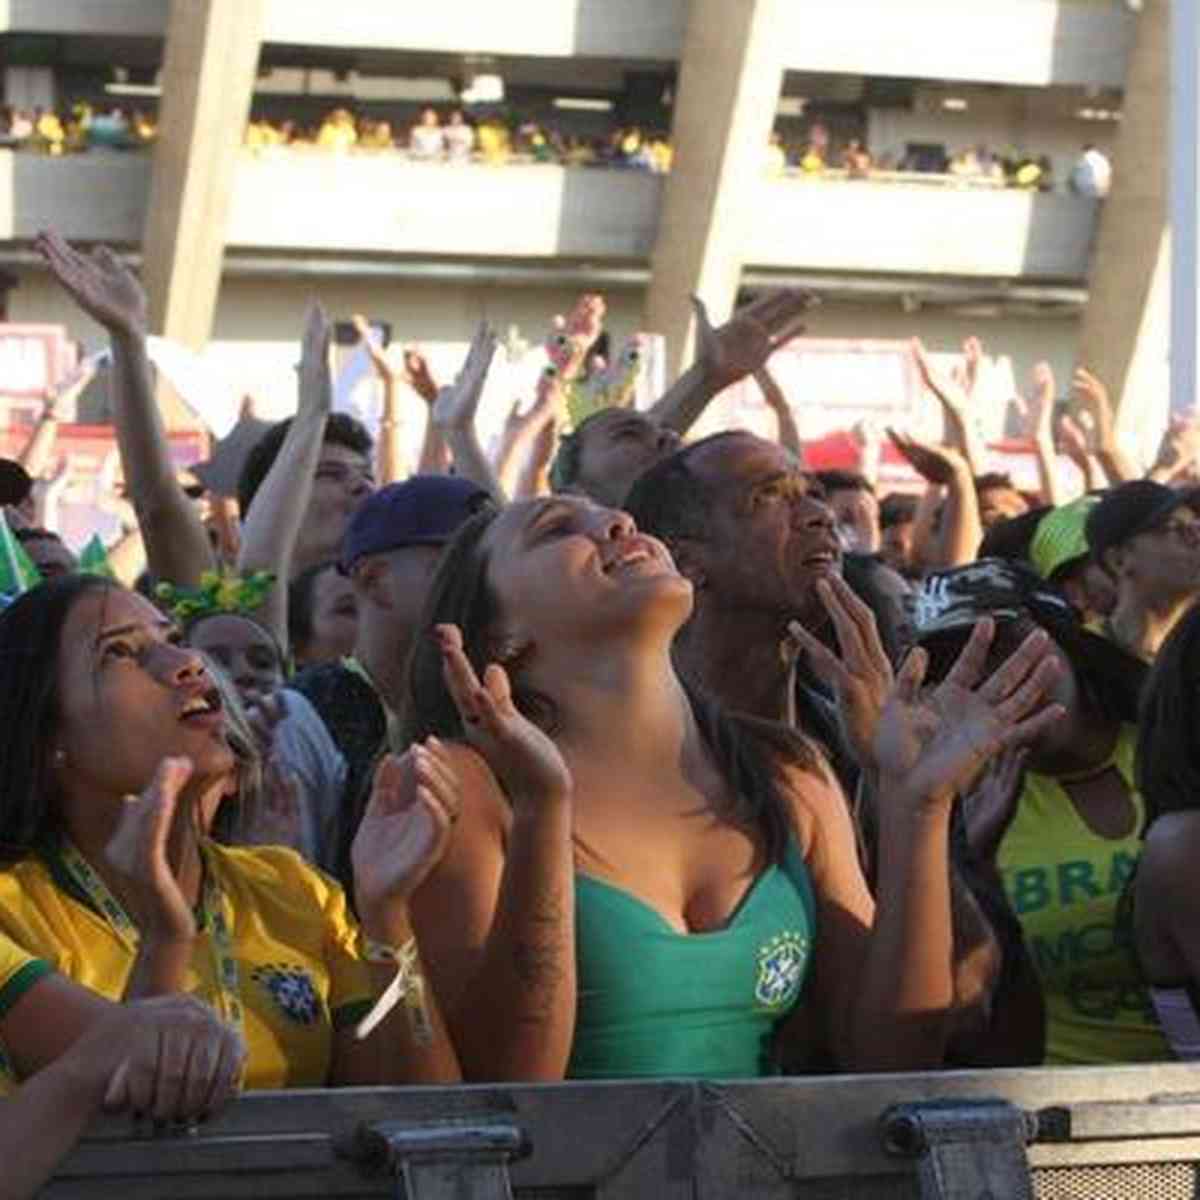 Brasil x Camarões: onde assistir jogo da Copa nos bares de BH e região